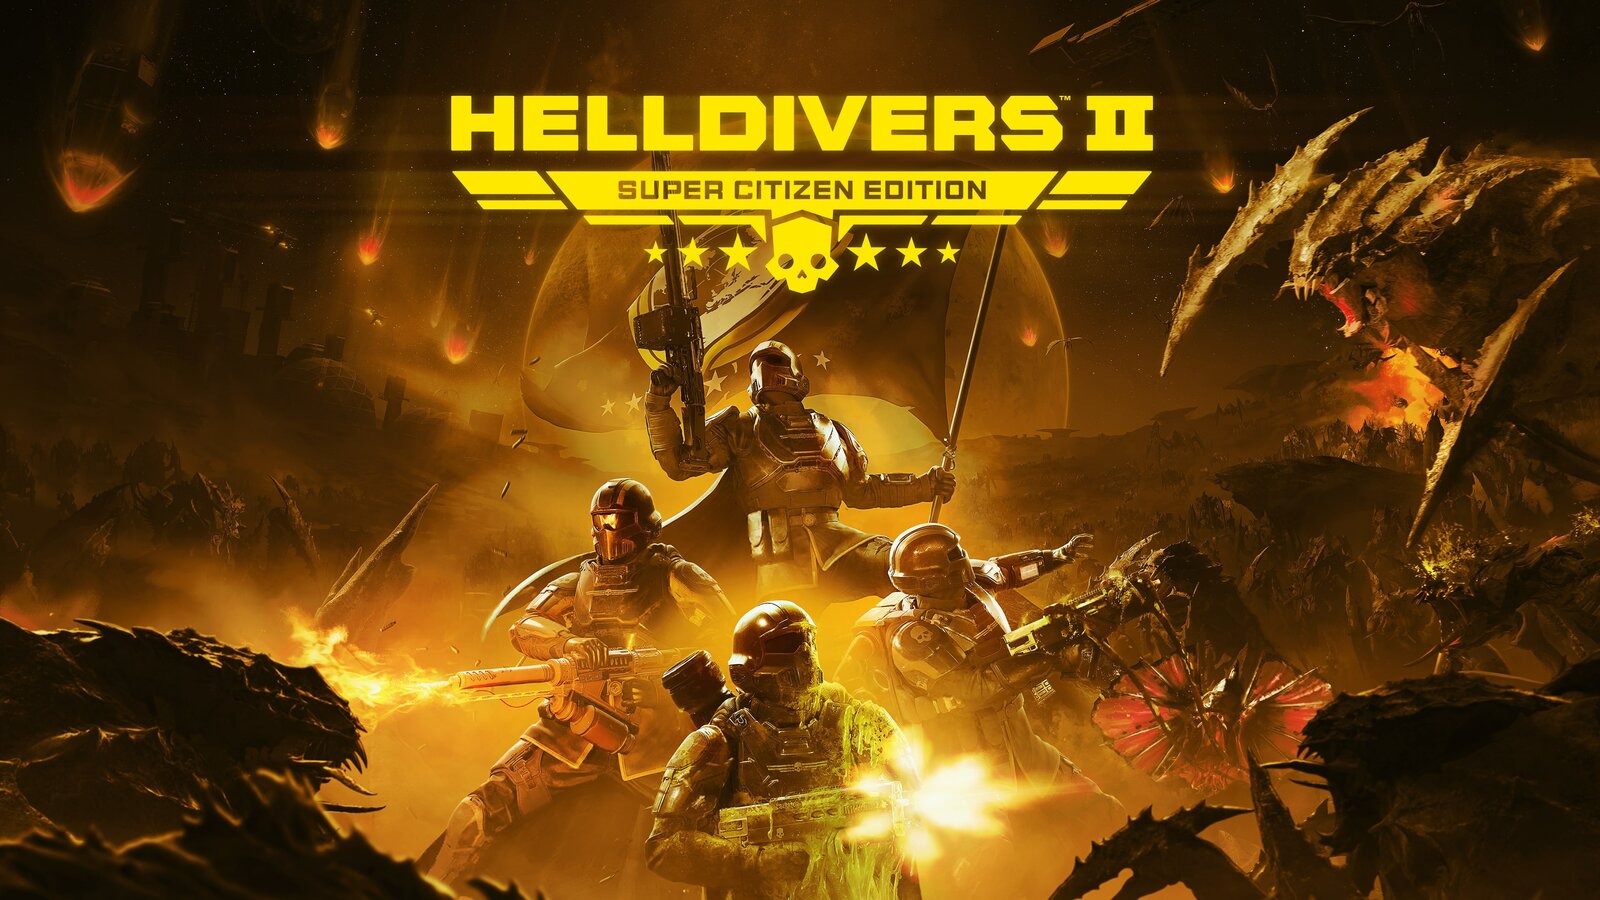 Helldivers II - Super Citizen Edition